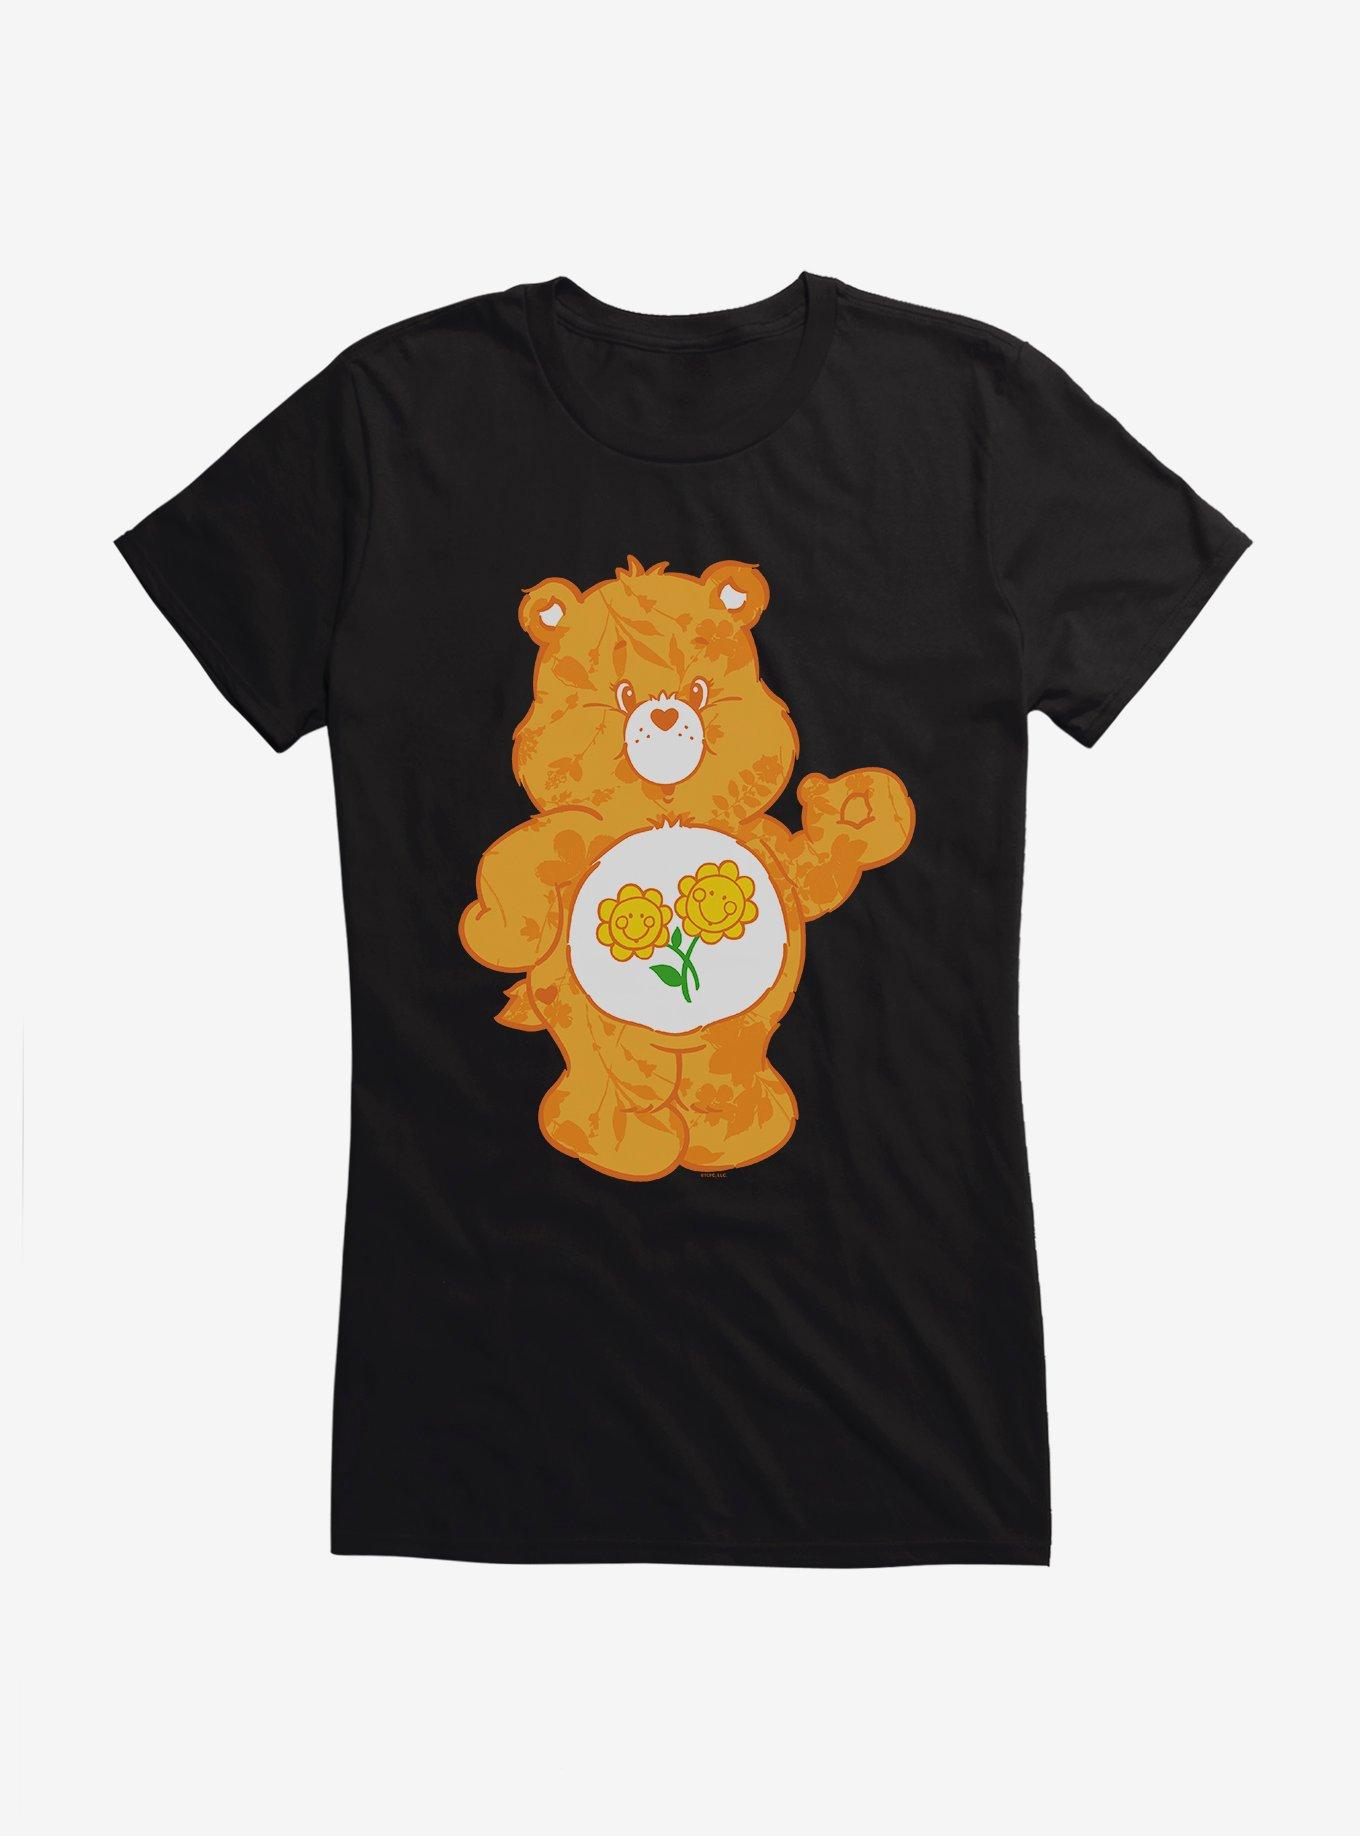 Care Bears Friend Bear Floral Girls T-Shirt